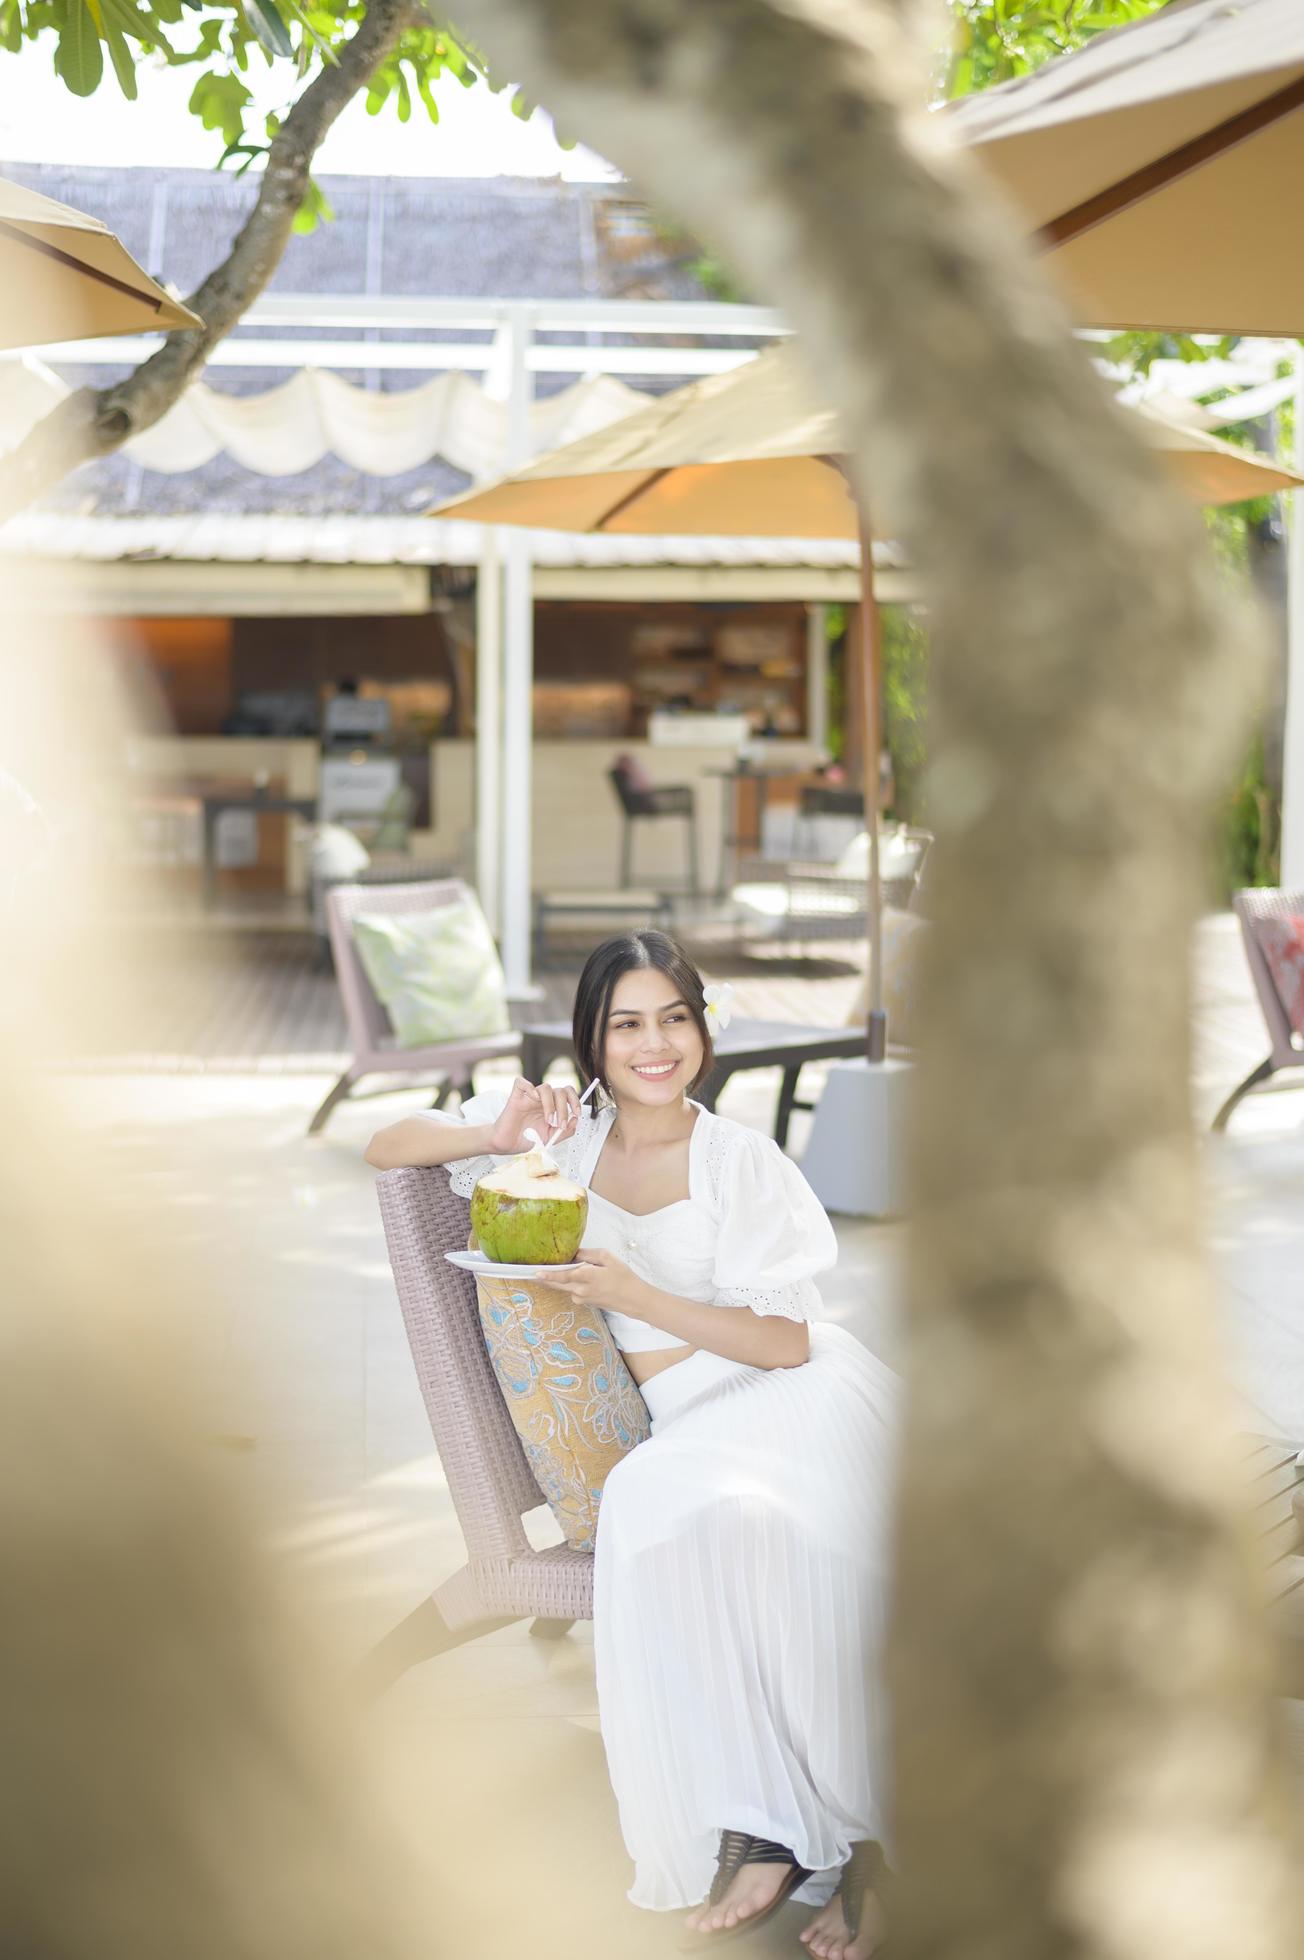 bella mujer turista con flor blanca en el pelo bebiendo coco sentada en un sillón durante las vacaciones de verano foto